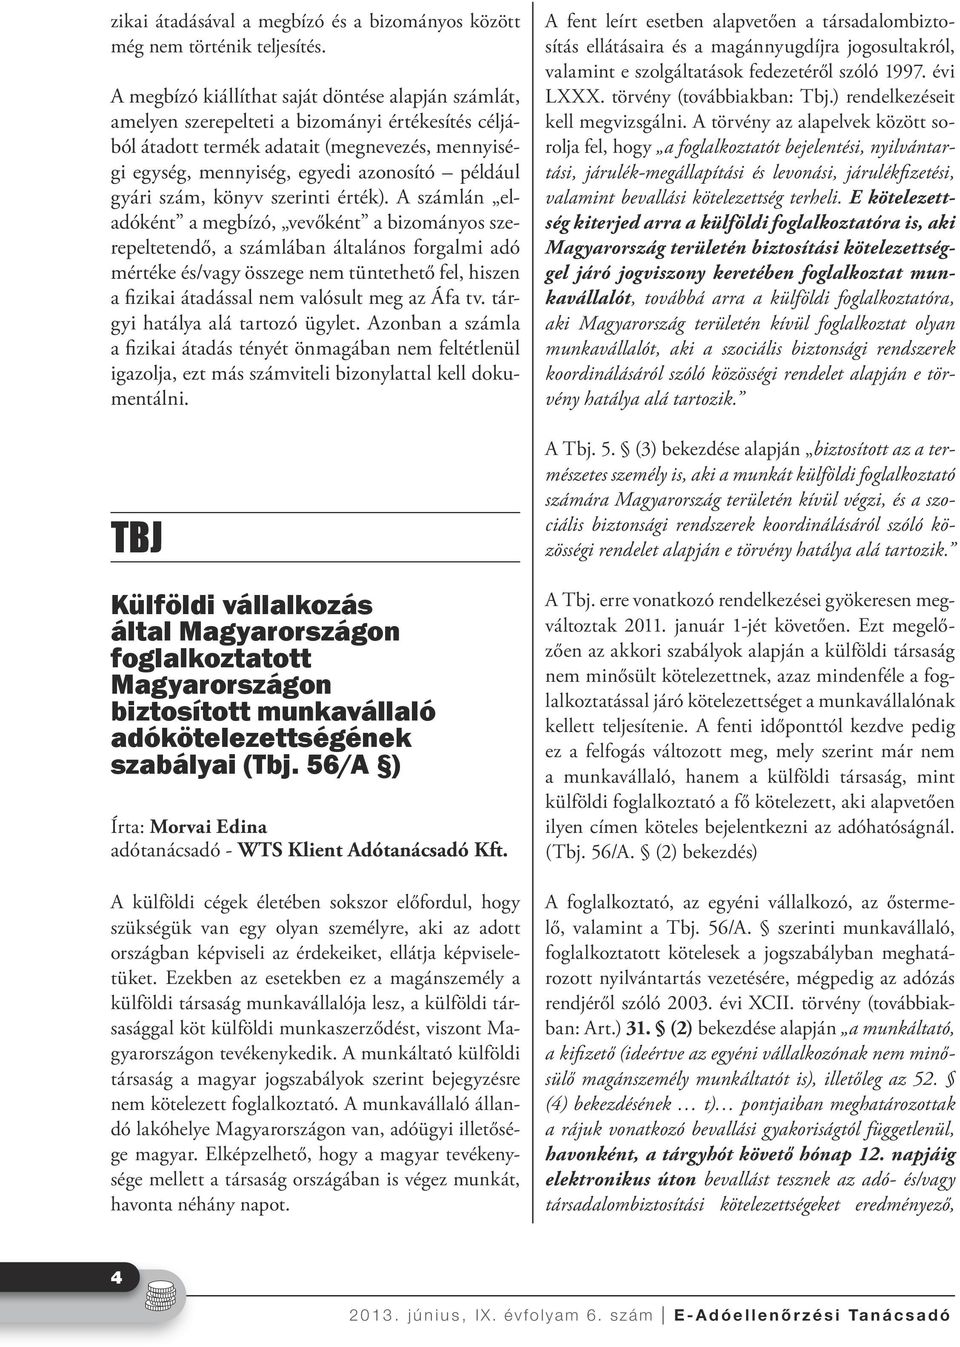 E-Adóellenőrzési Tanácsadó Szakmai folyóirat - PDF Ingyenes letöltés